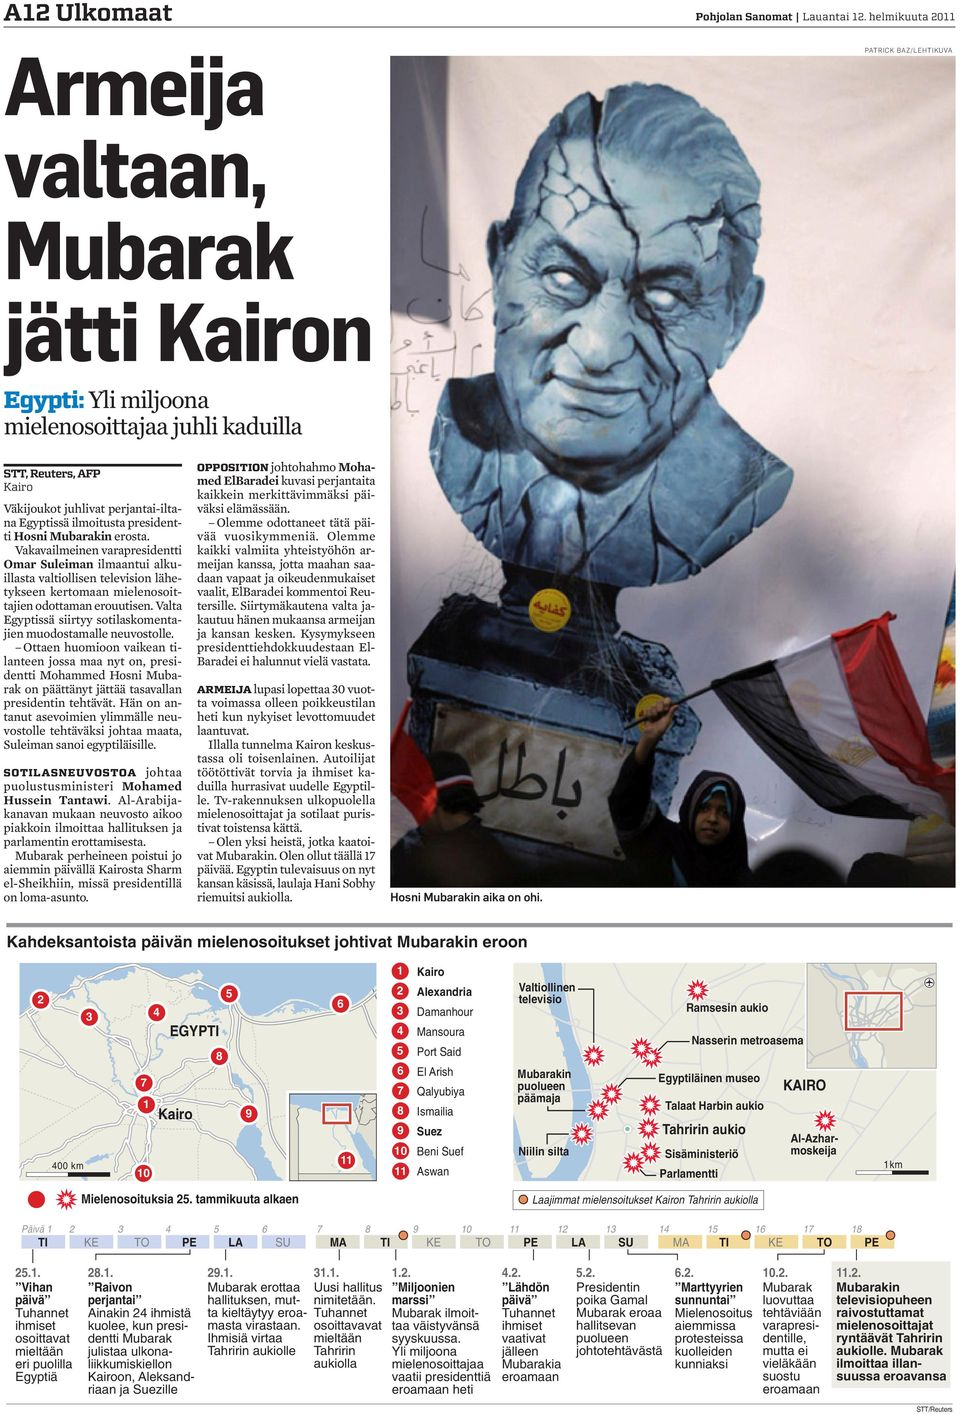 ilmoitusta presidentti Hosni Mubarakin erosta. Vakavailmeinen varapresidentti Omar Suleiman ilmaantui alkuillasta valtiollisen television lähetykseen kertomaan mielenosoittajien odottaman erouutisen.